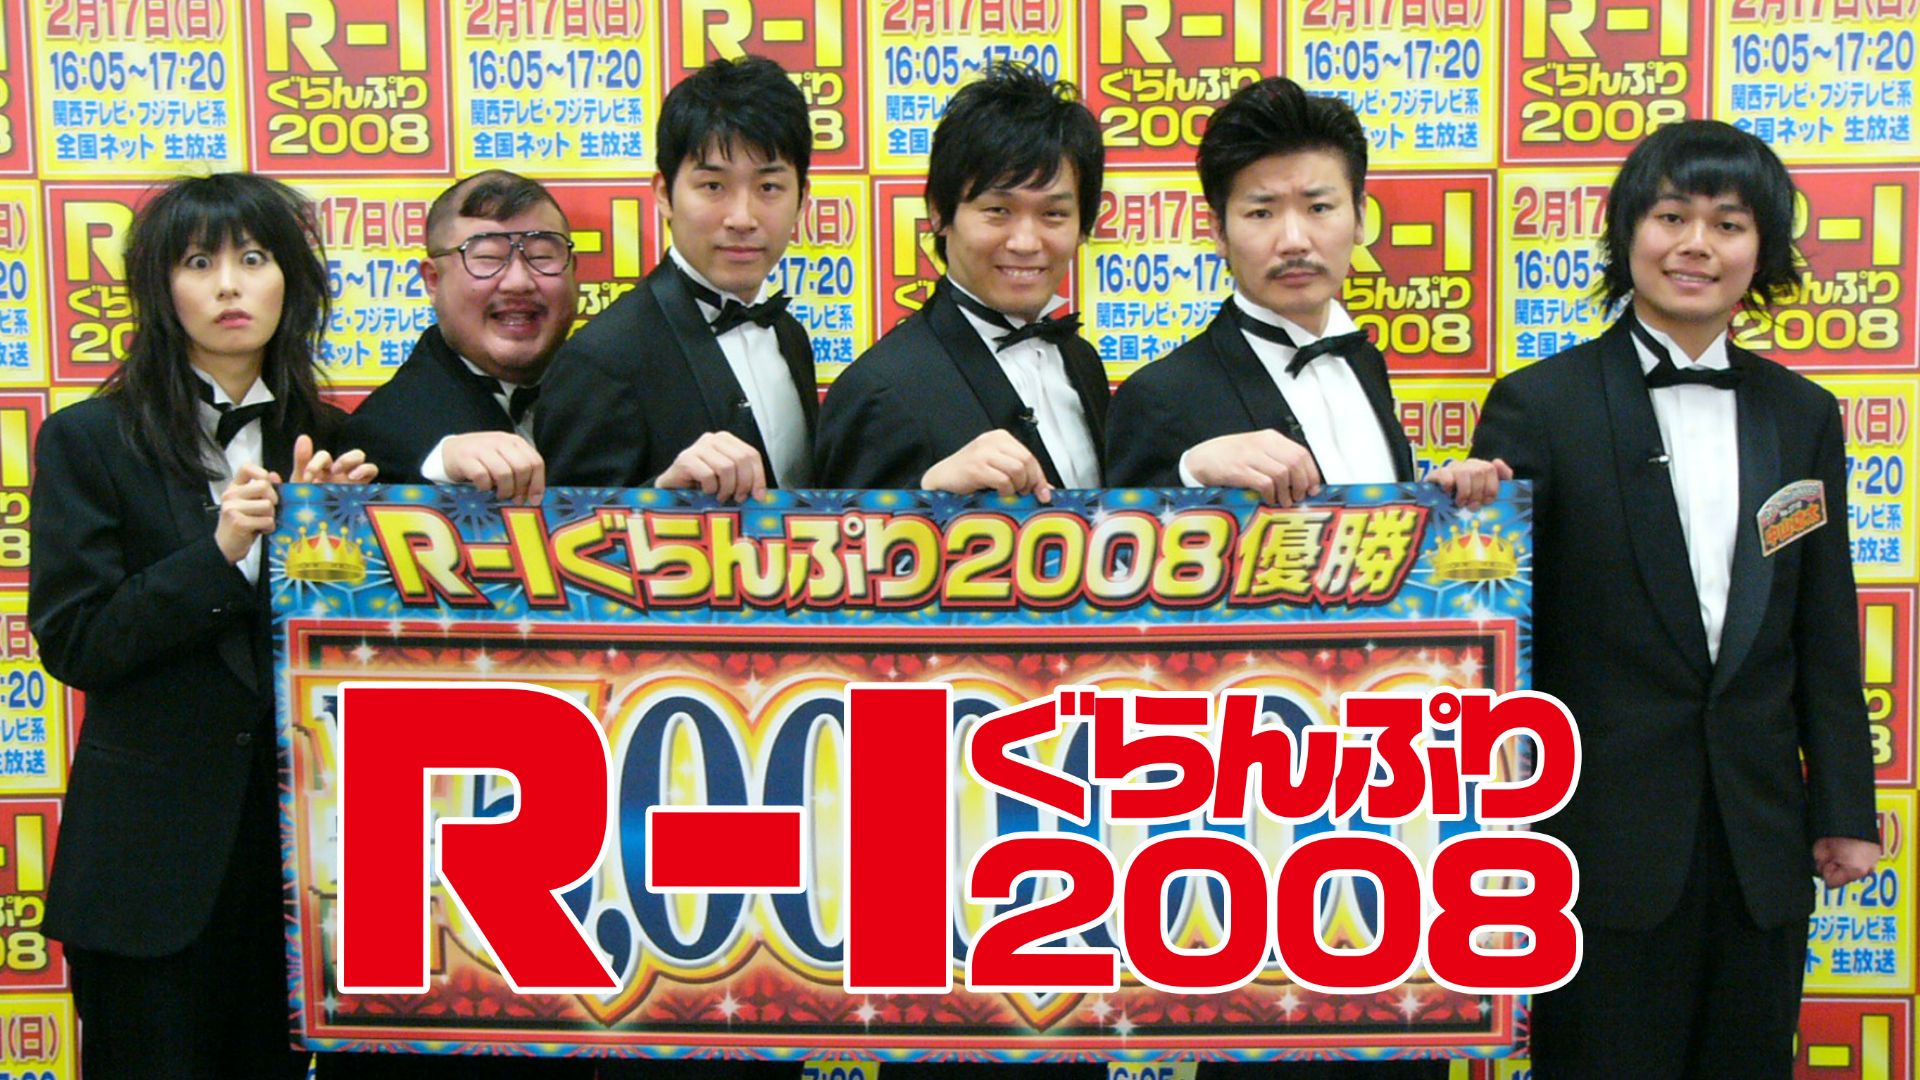 R-1ぐらんぷり2008